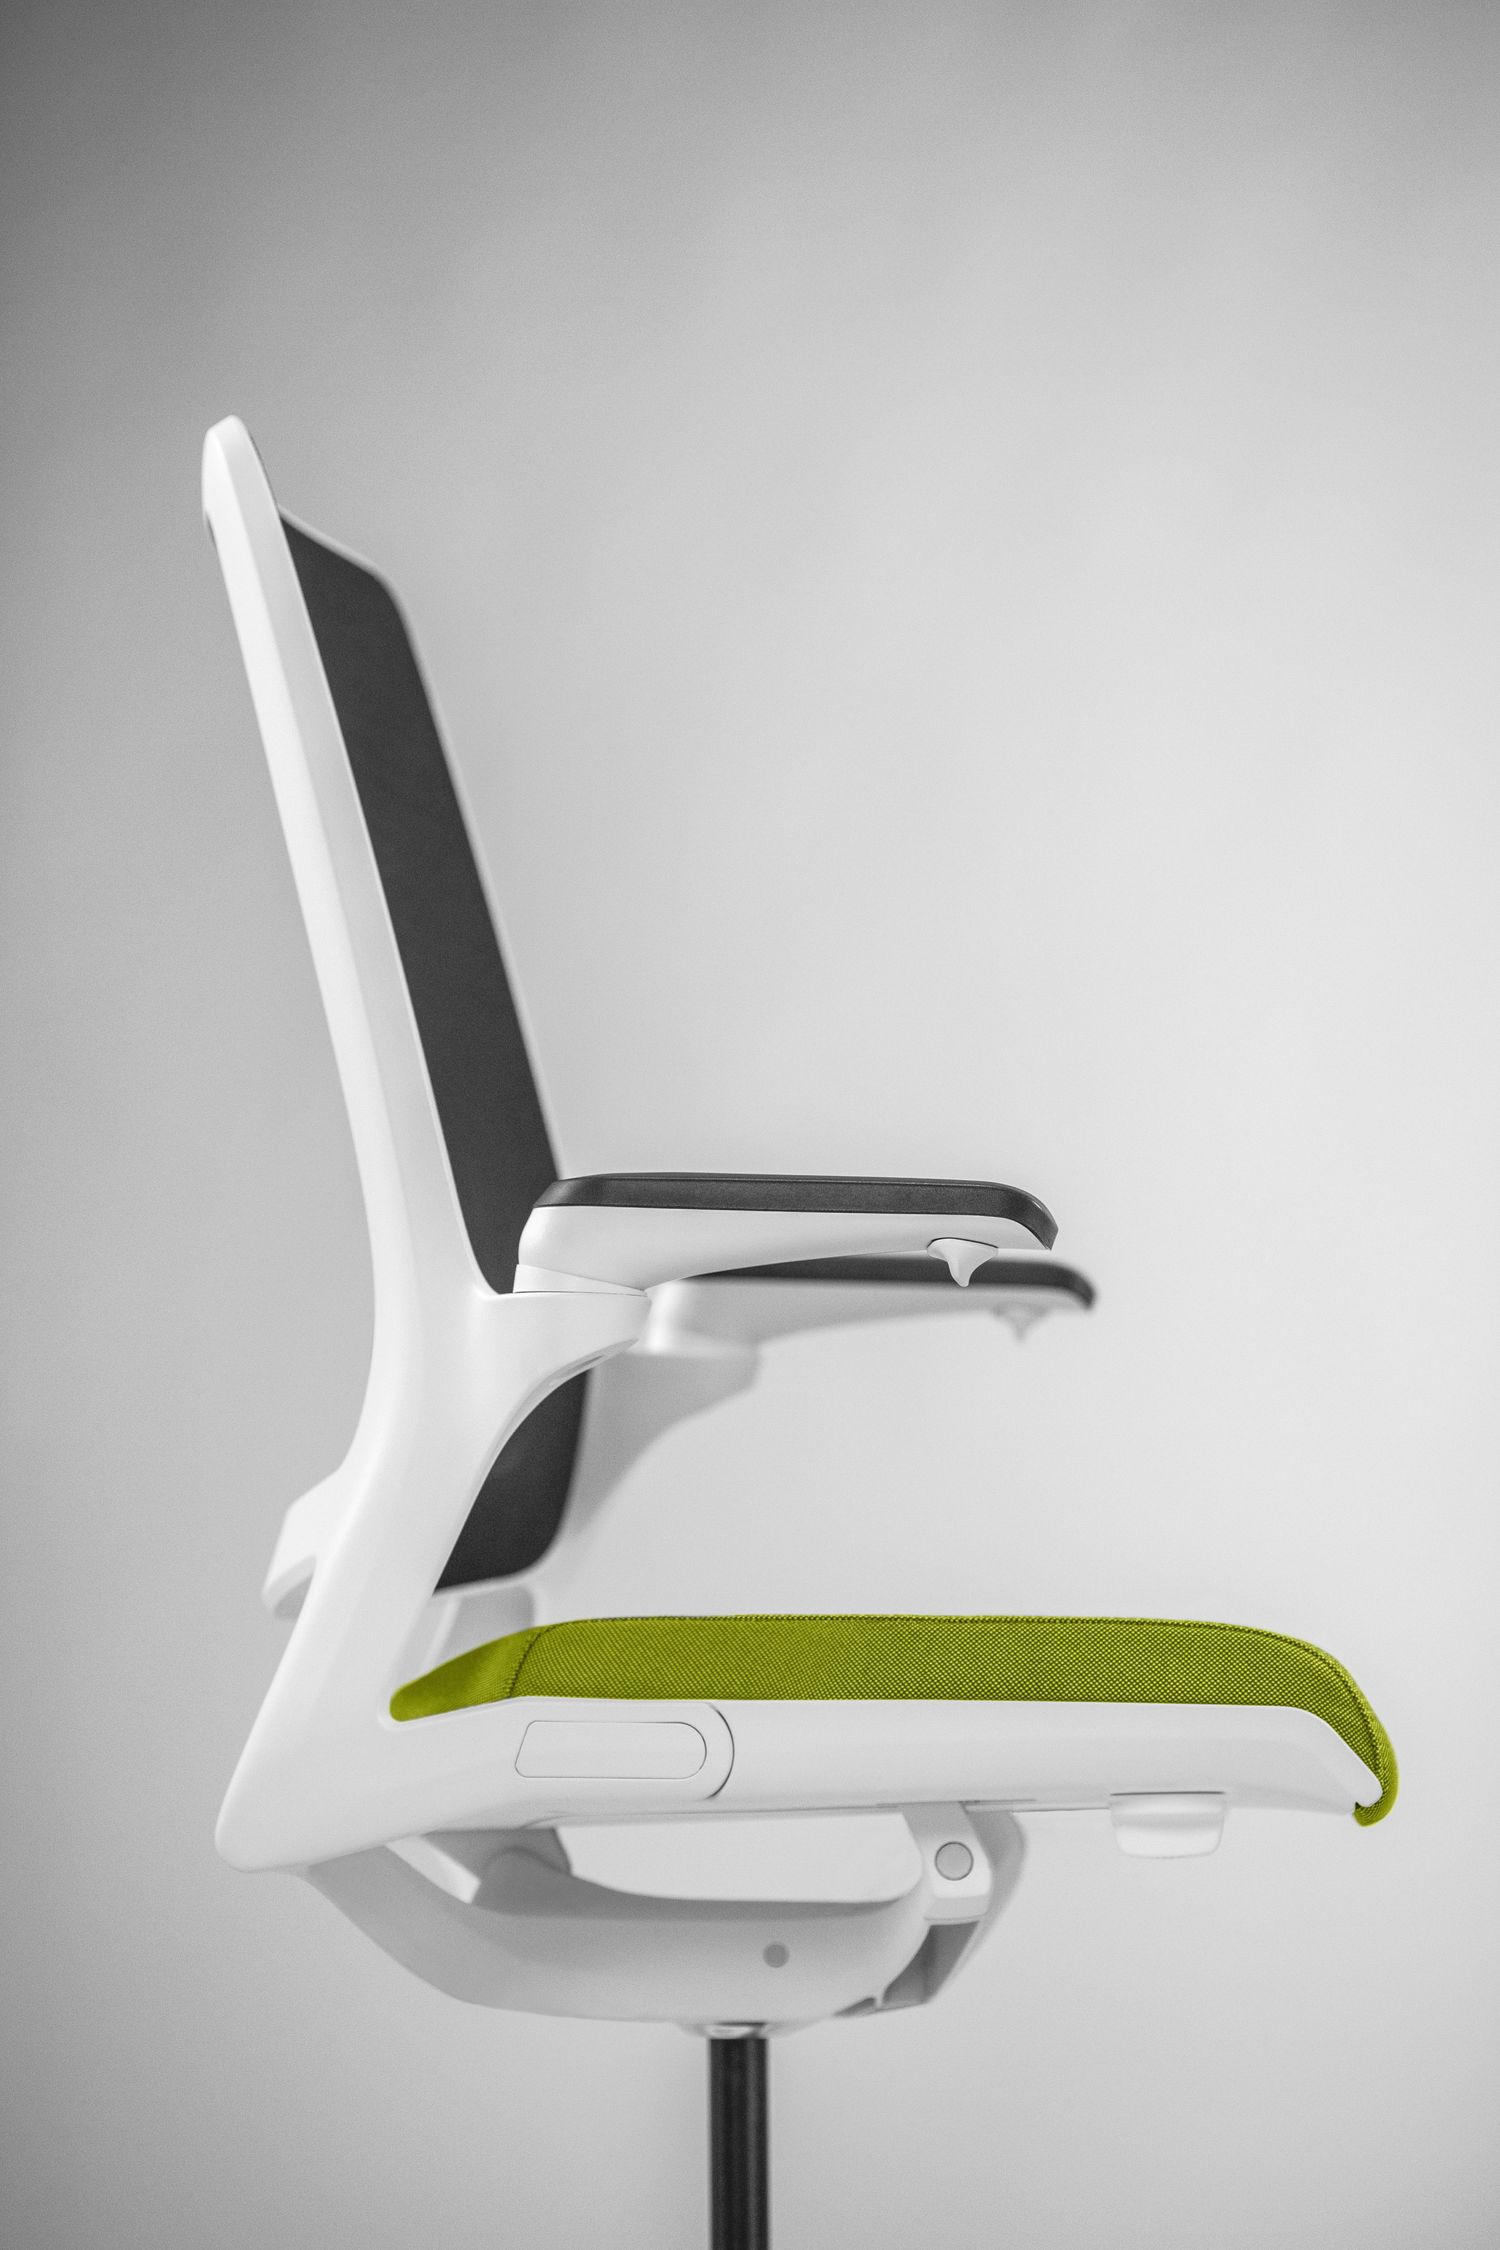 SMART to fotel biurowy obrotowy, który idealnie spełnia wymagania do ergonomicznej pracy zarówno w biurze, jak i w domu, dostosowany jest do potrzeb pracy z urządzeniami przenośnymi jak i do pracy klasycznej.